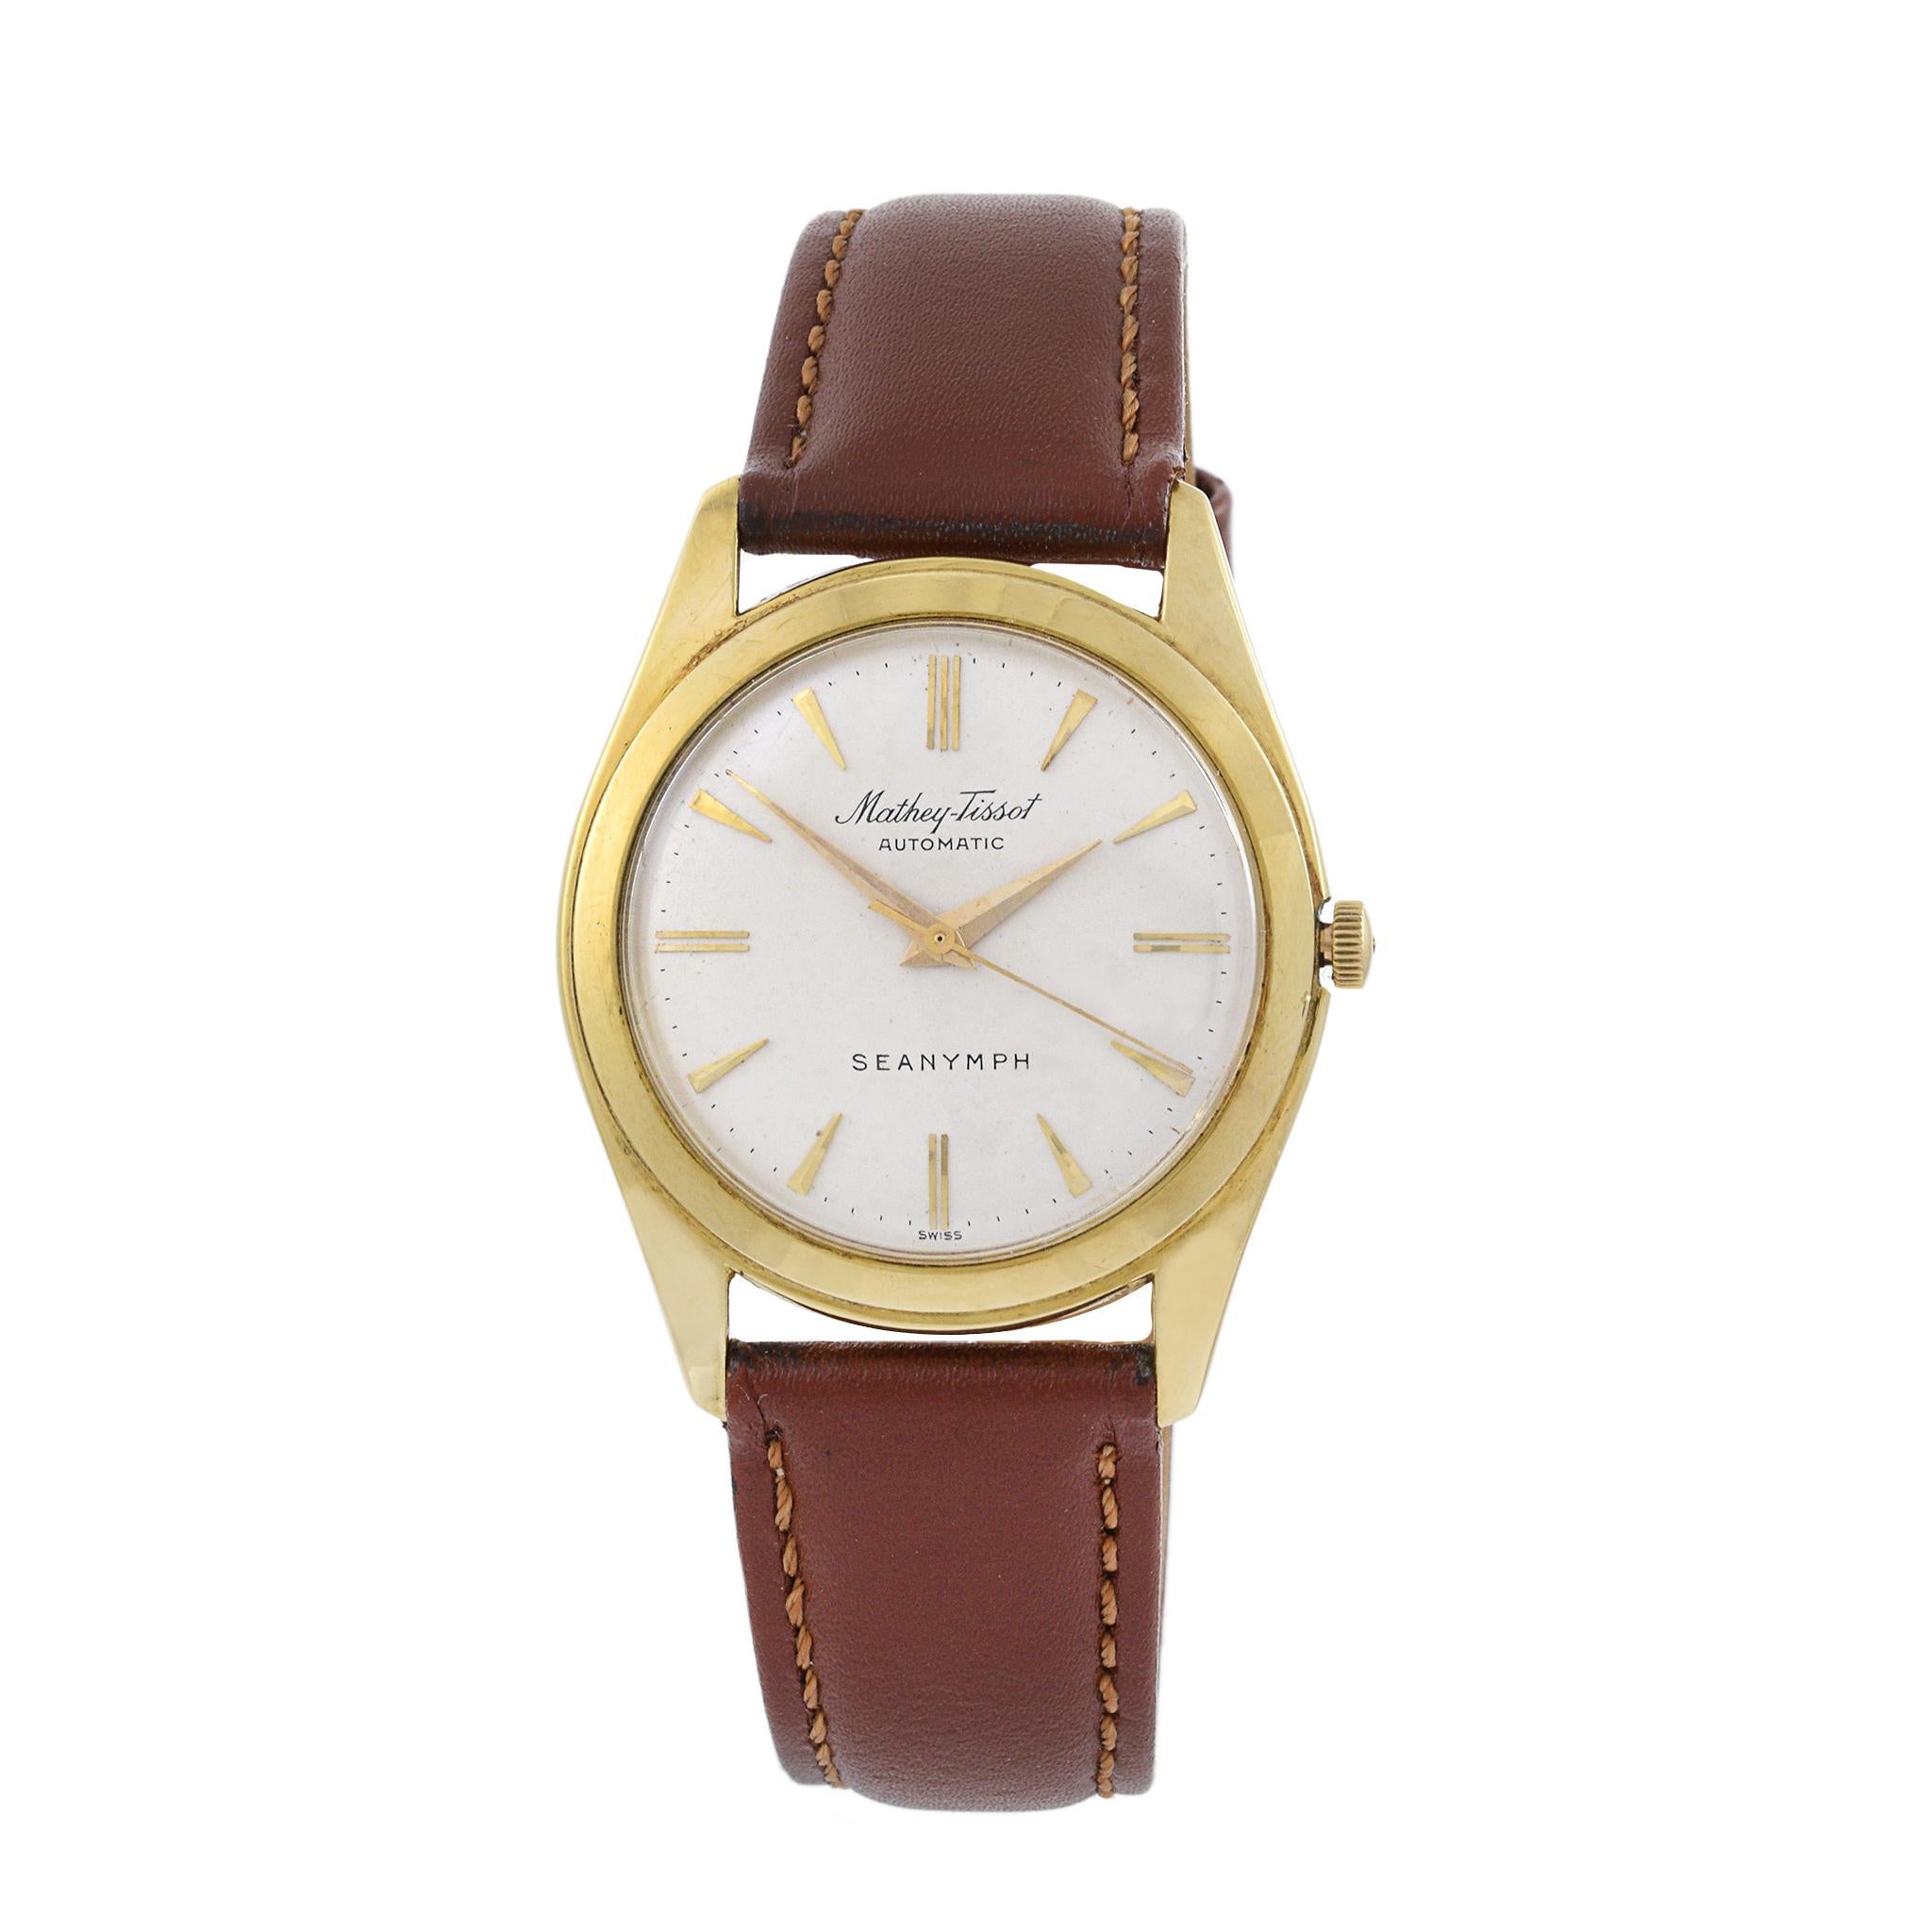 Il s'agit d'une Tissot Sea Nymph en excellent état, datant des années 1960. Le boîtier de cette montre est en or jaune 18 carats. Le boîtier mesure 34 mm de diamètre.

Le cadran est d'origine et le boîtier n'est pas poli.

La montre est animée par